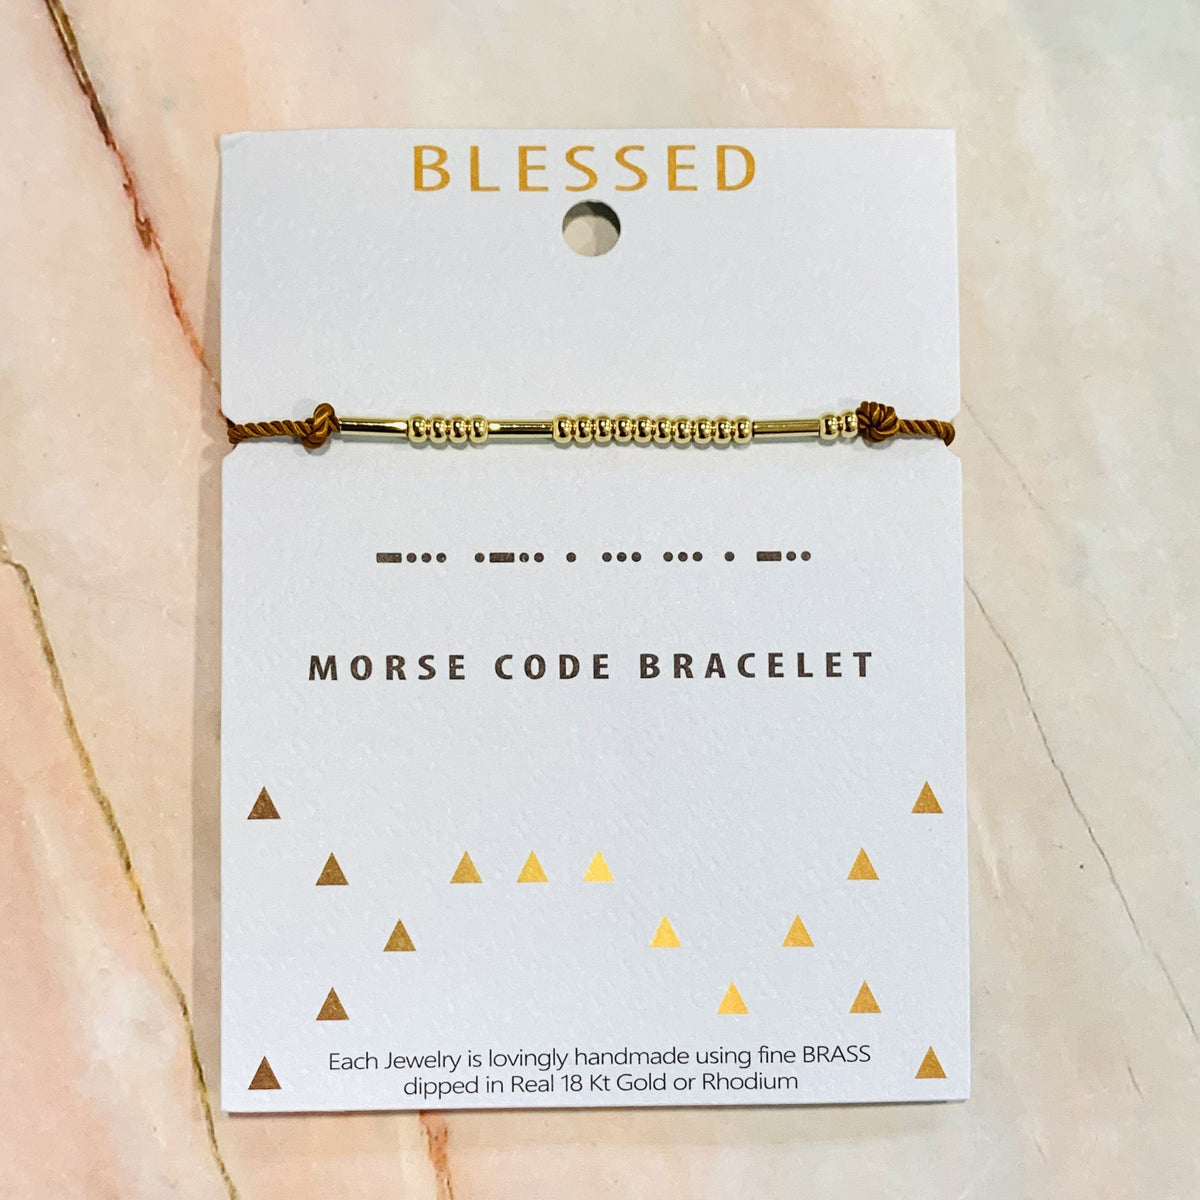 Morse Code Bracelet Lauren-Spencer Blessed 